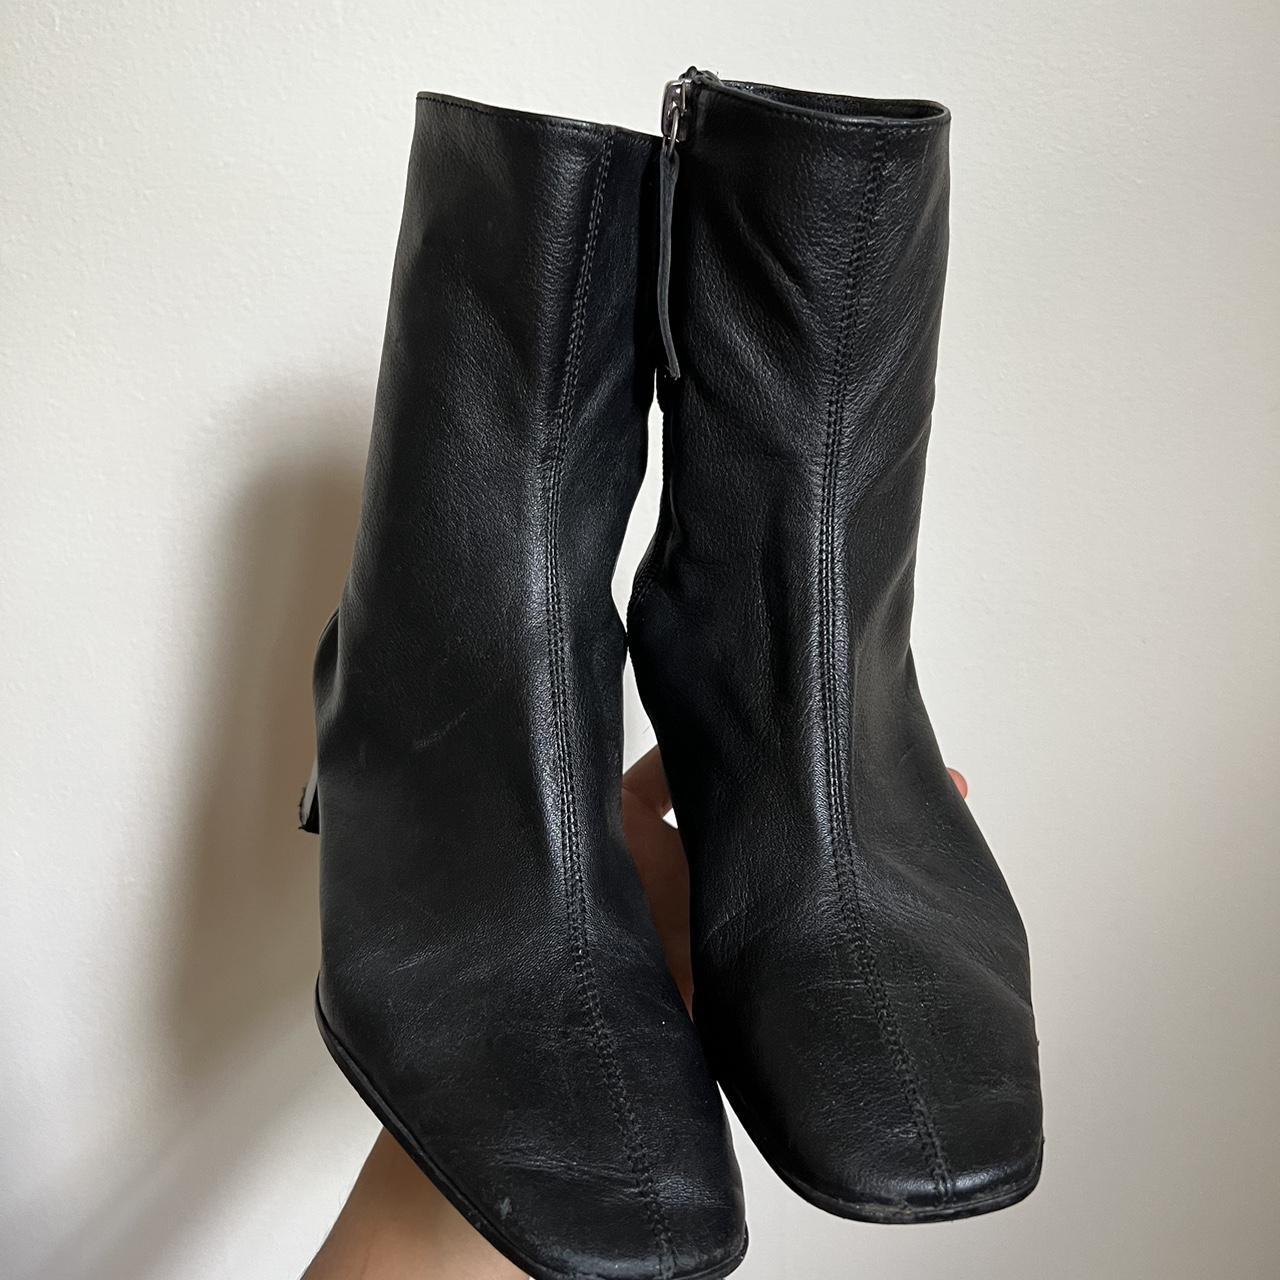 Faux Leather Black Zara Ankle Booties #blackbooties... - Depop